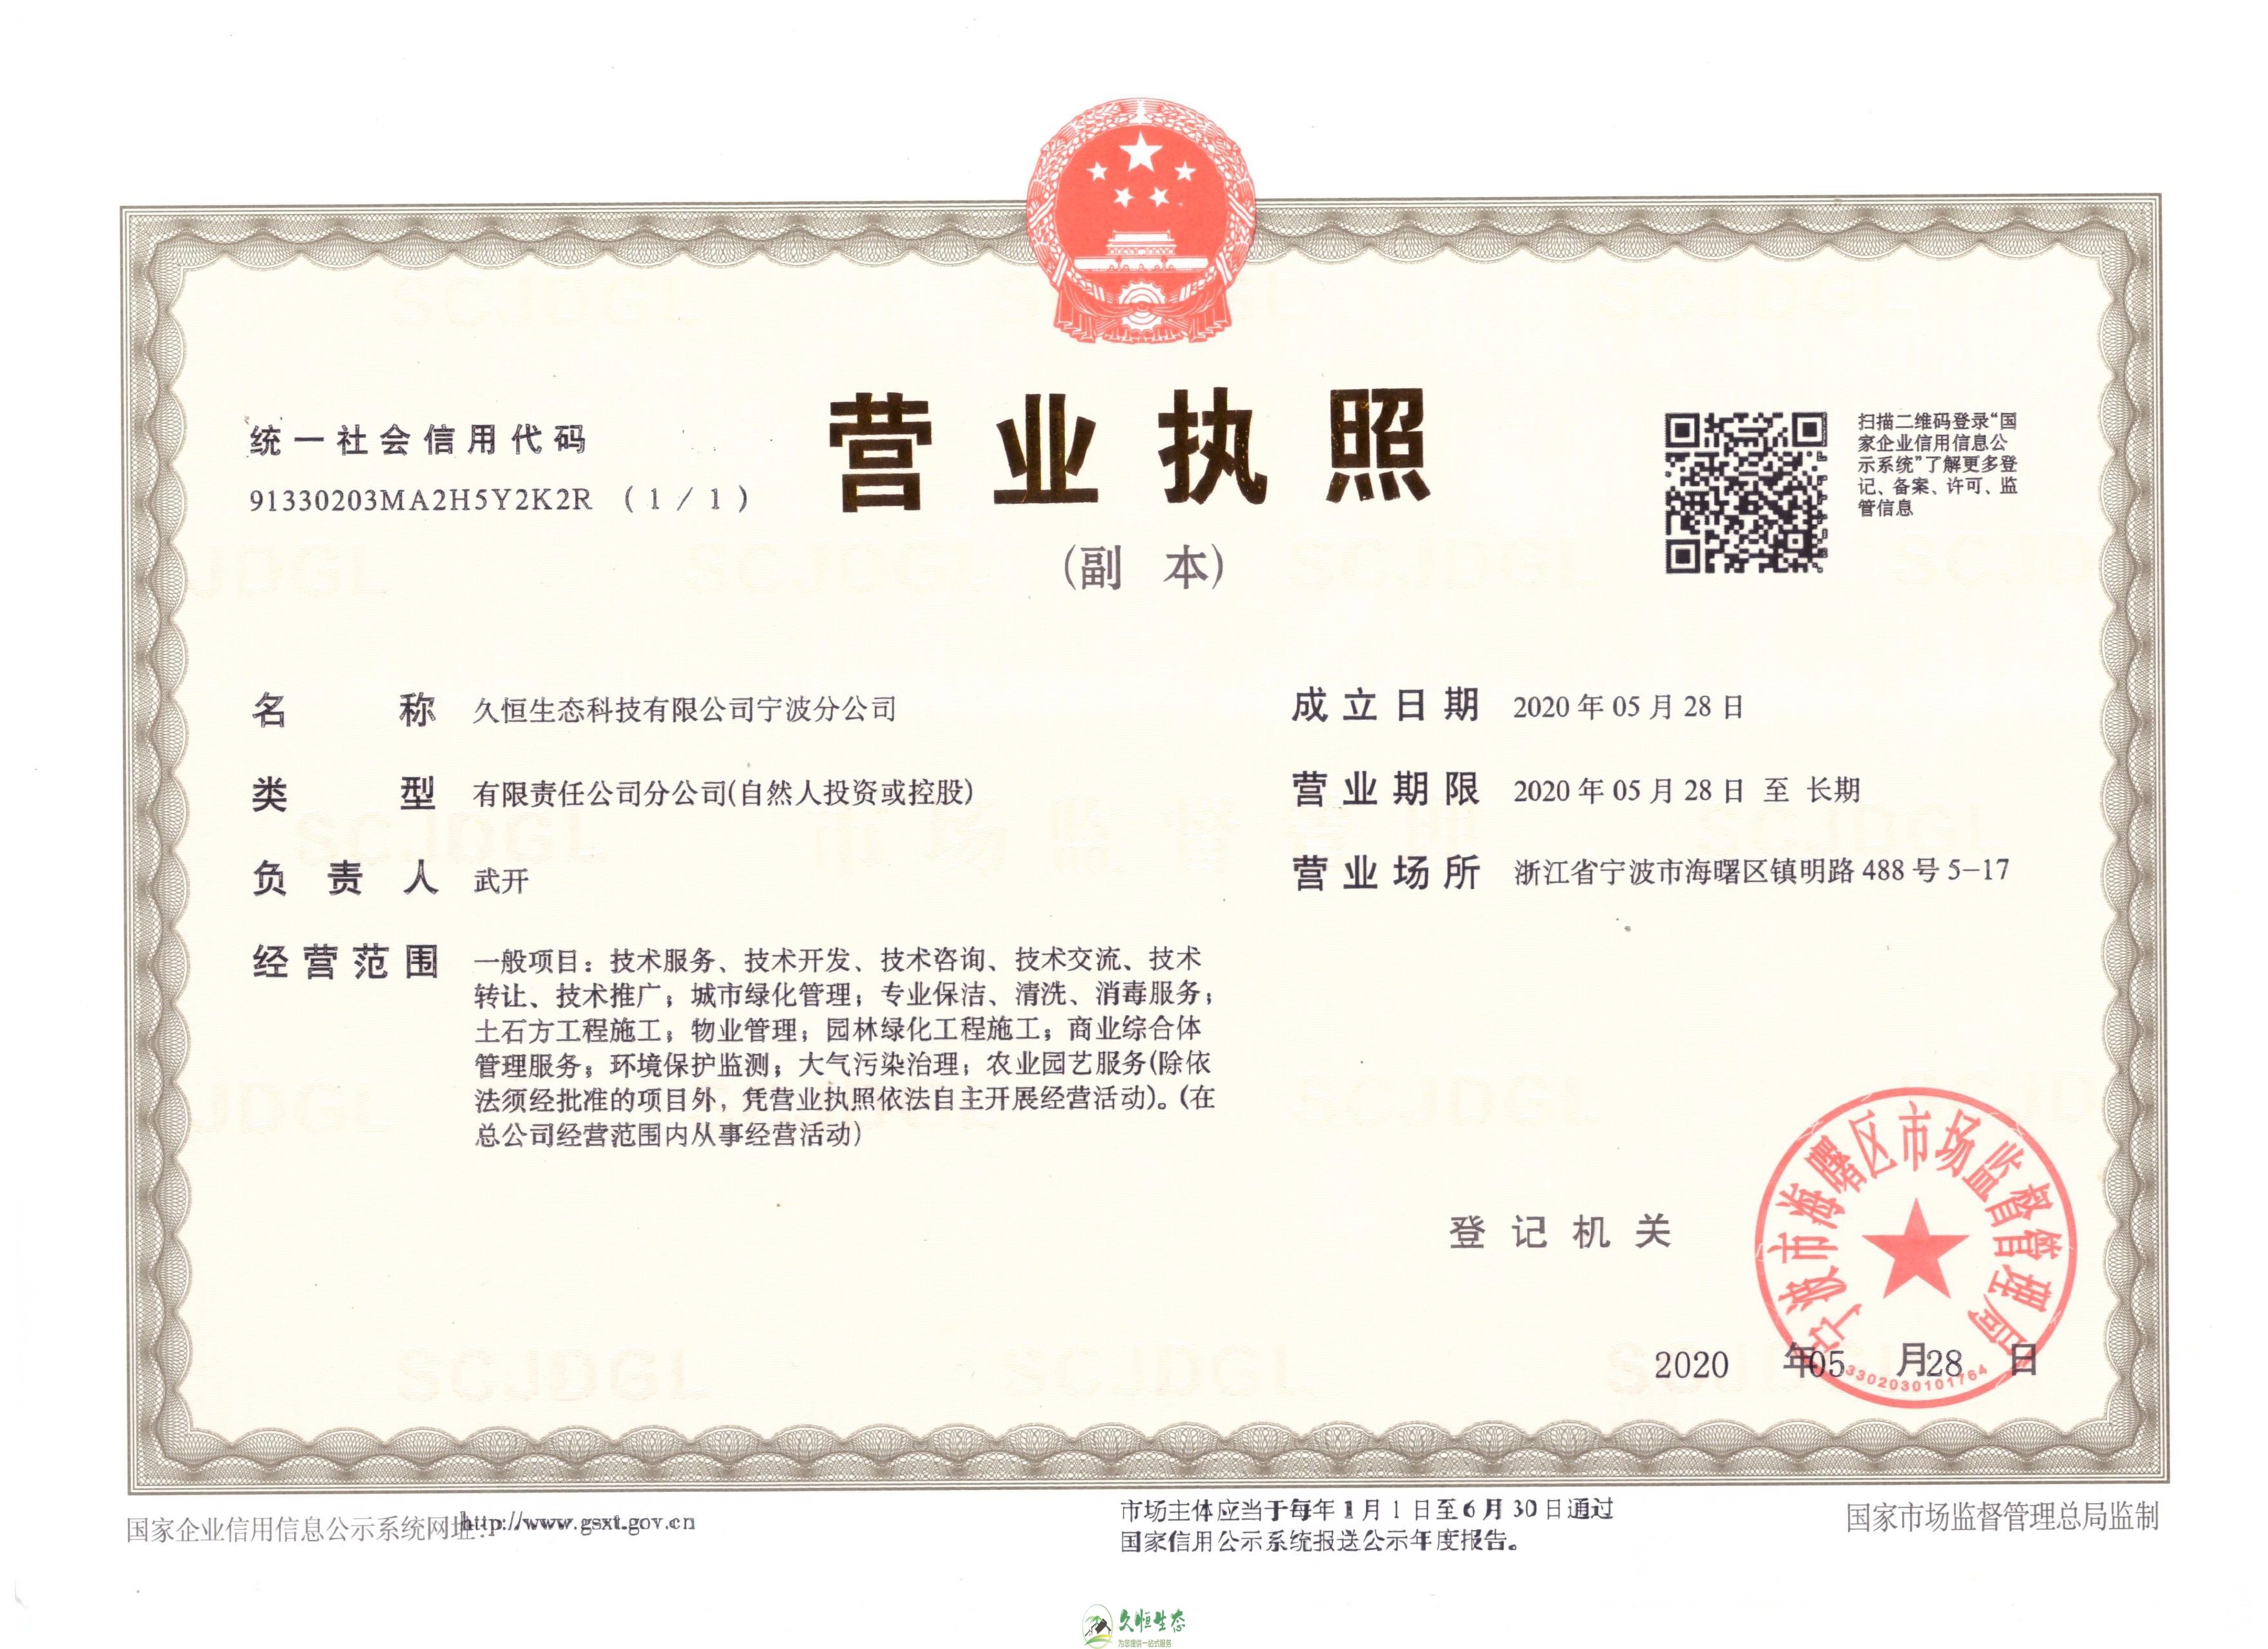 杭州富阳久恒生态宁波分公司2020年5月28日成立